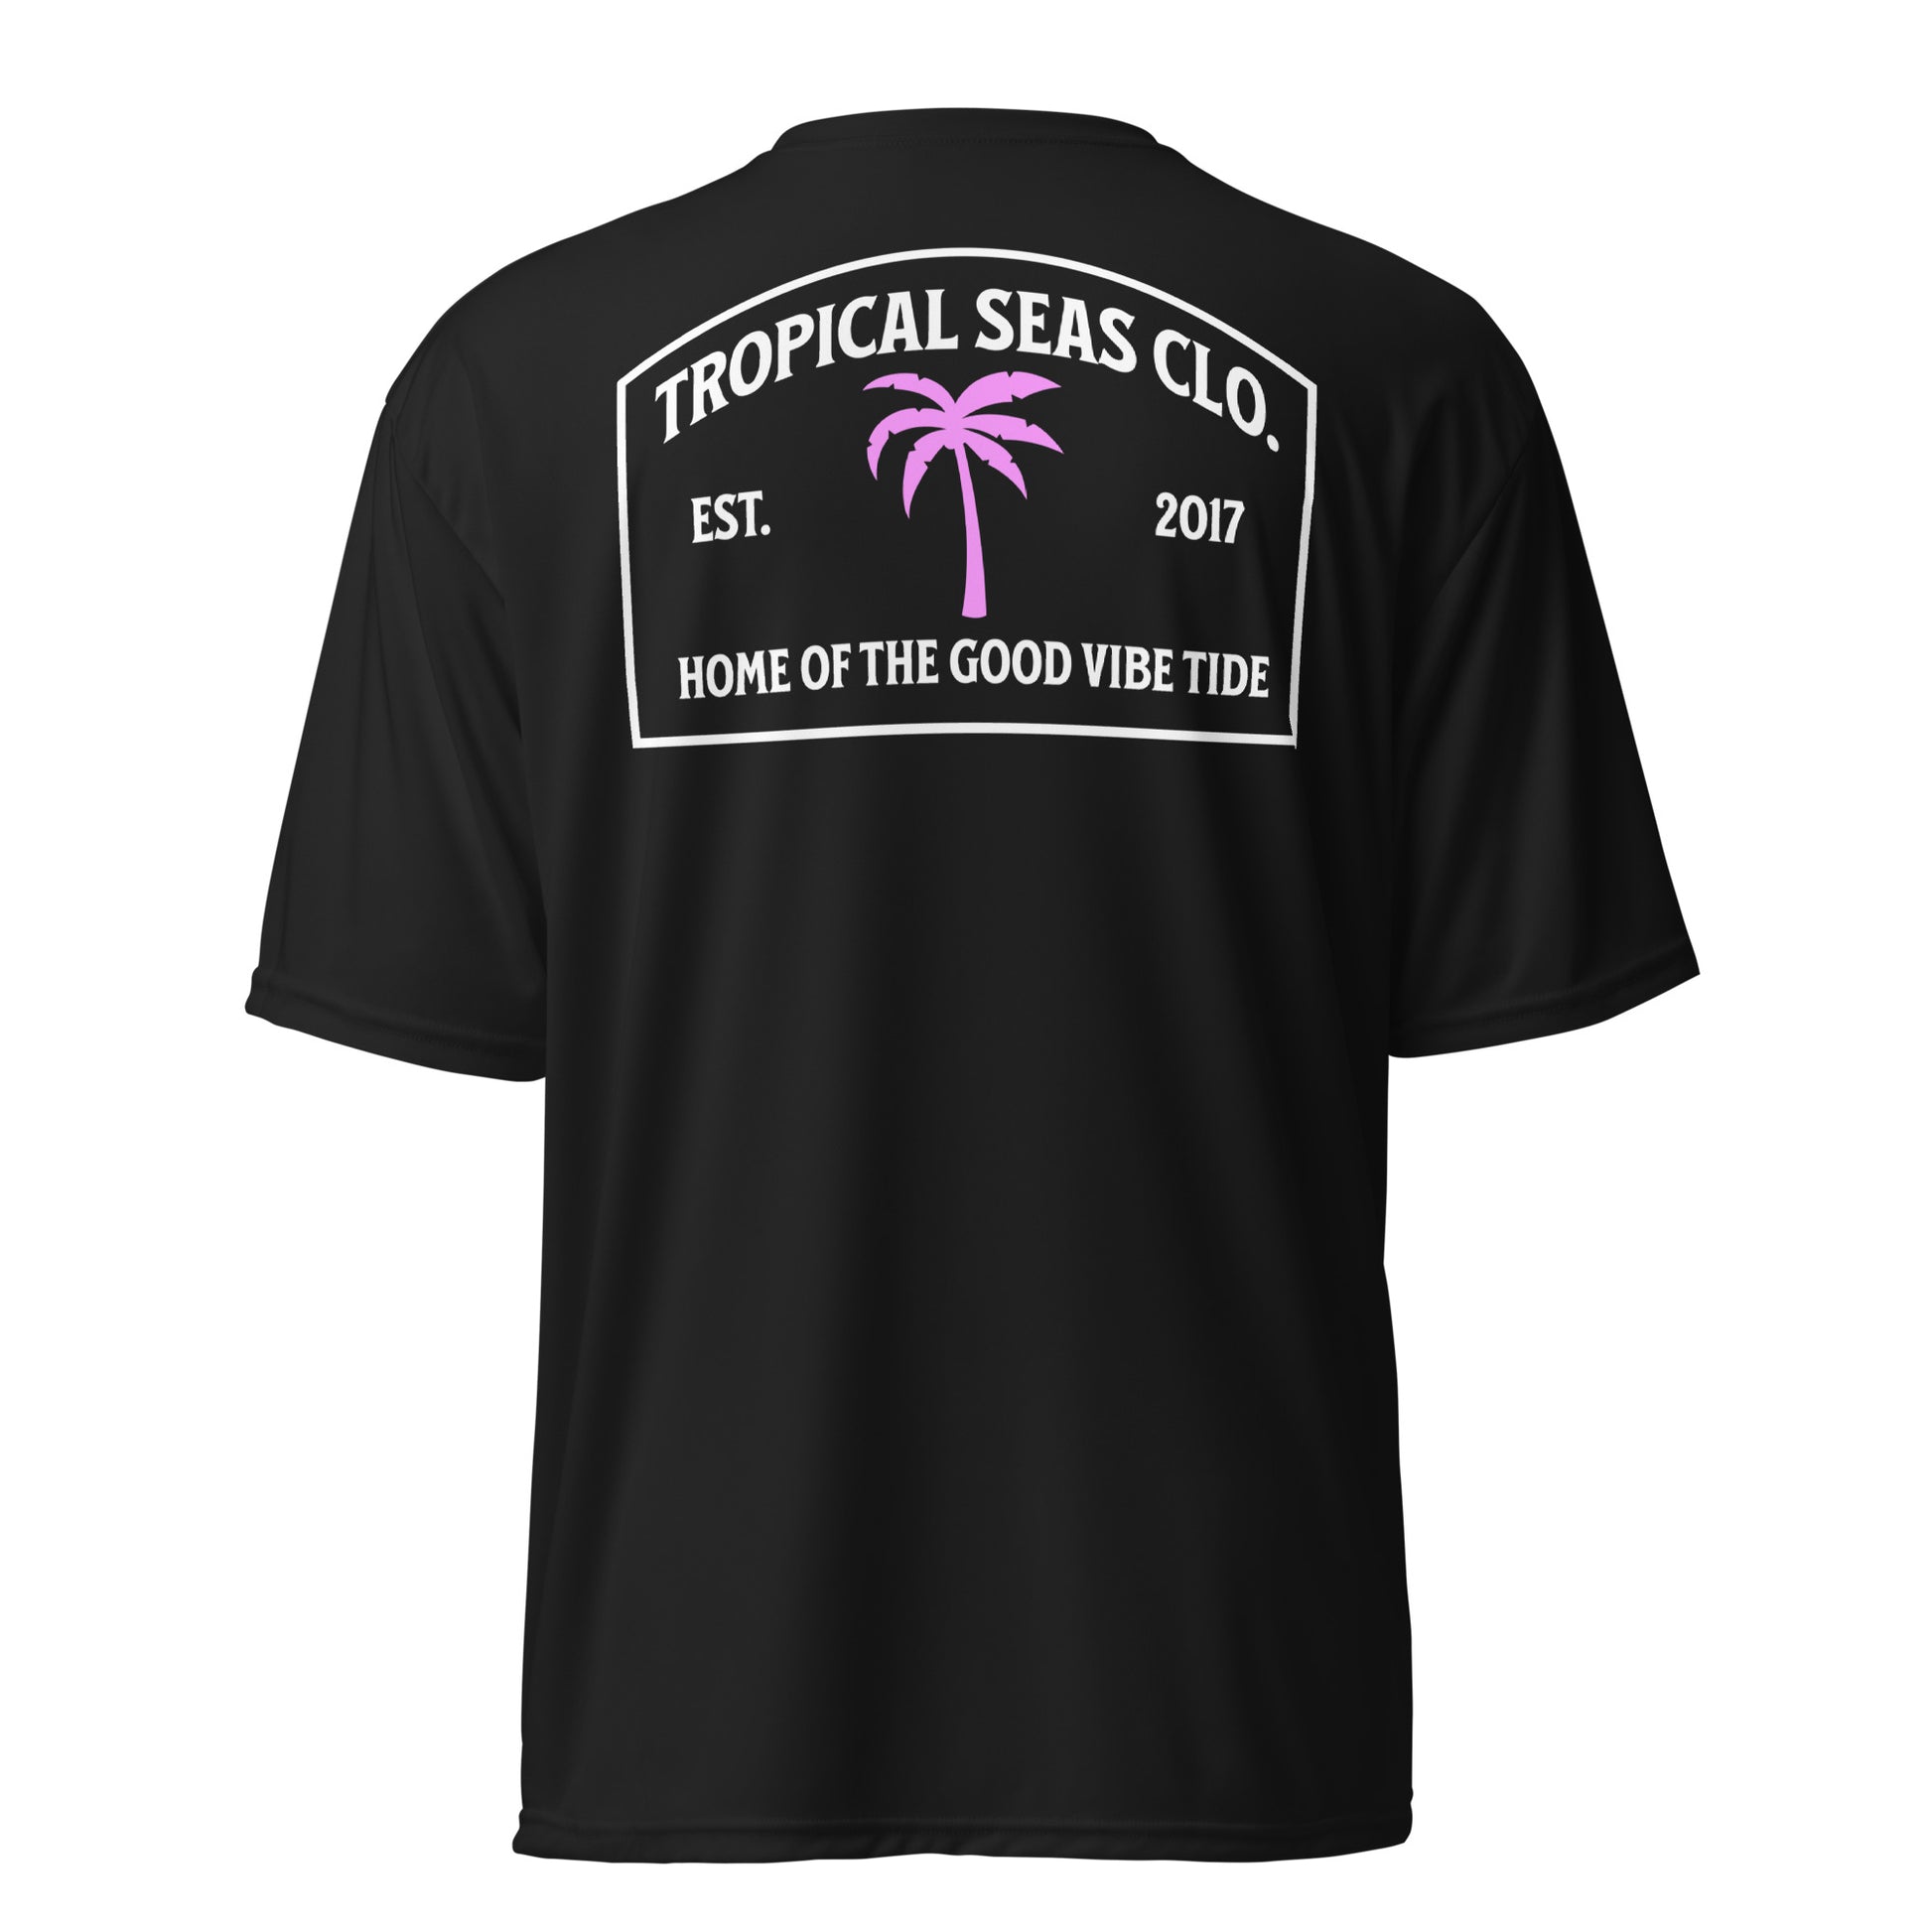 Island Palm Fishing Performance T-shirt - Tropical Seas Clothing 